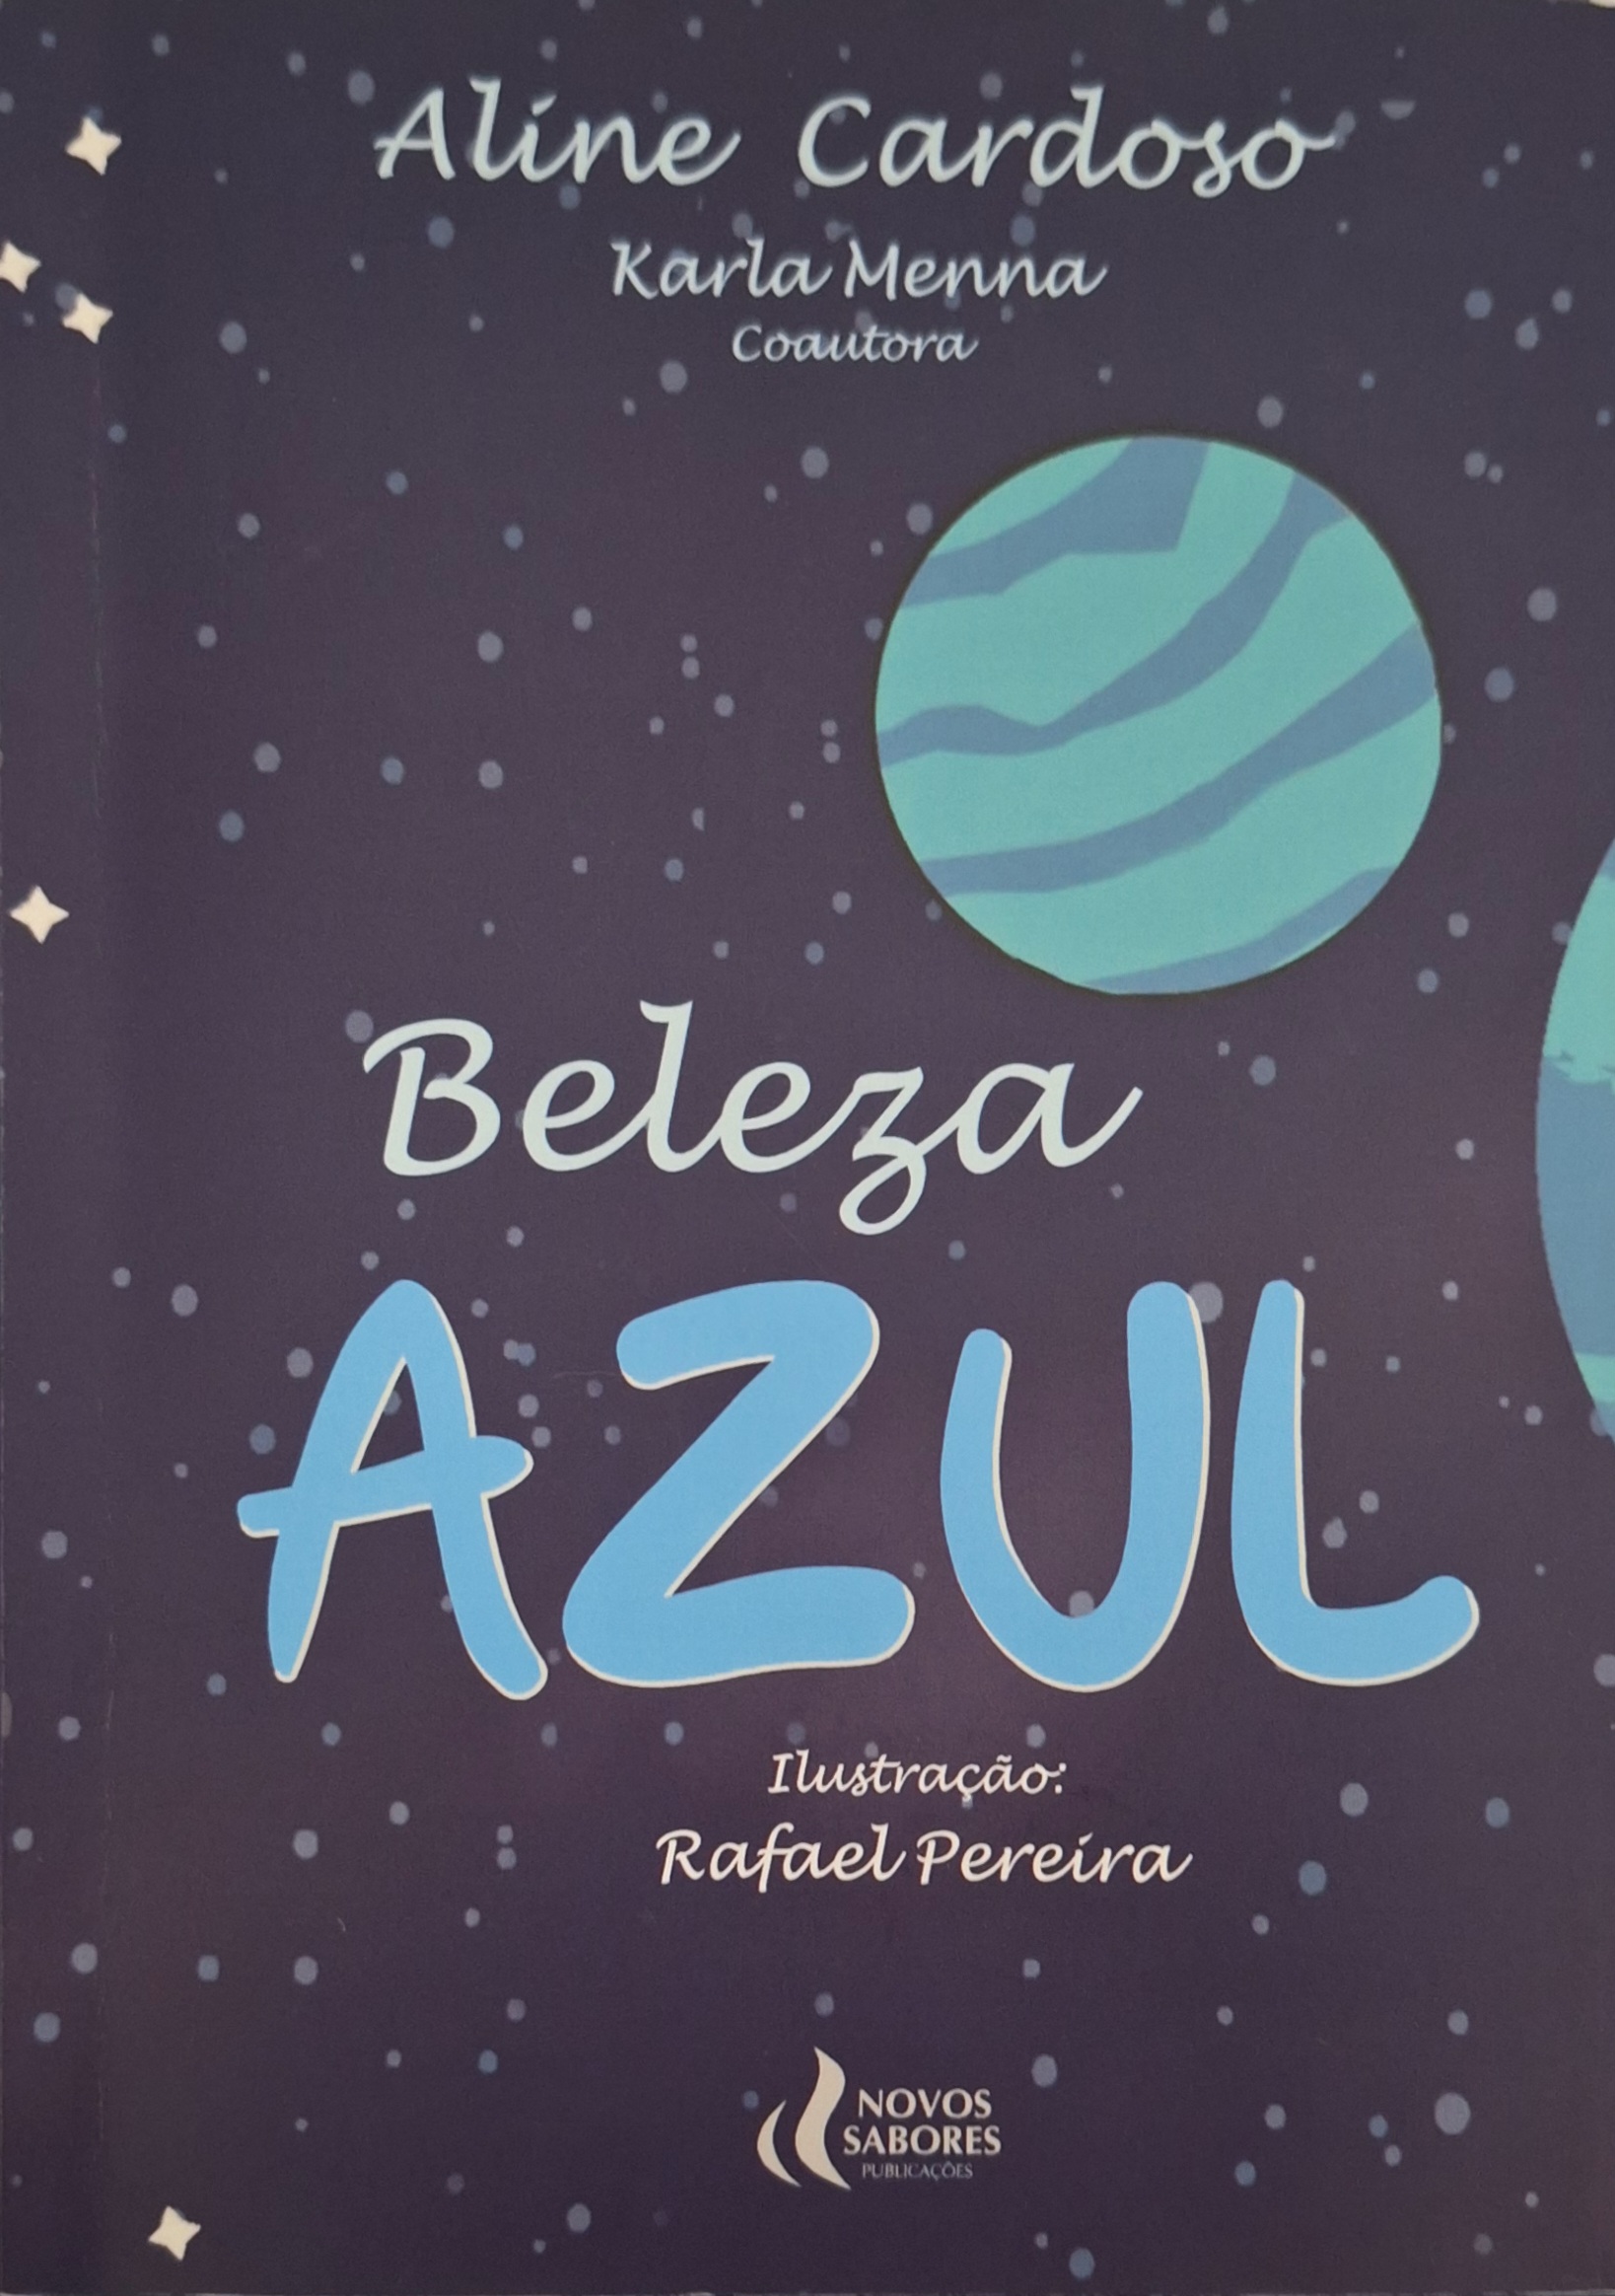 Capa do Livro Beleza Azul de Aline Cardoso e Karla Menna pela Editora Novos Sabores